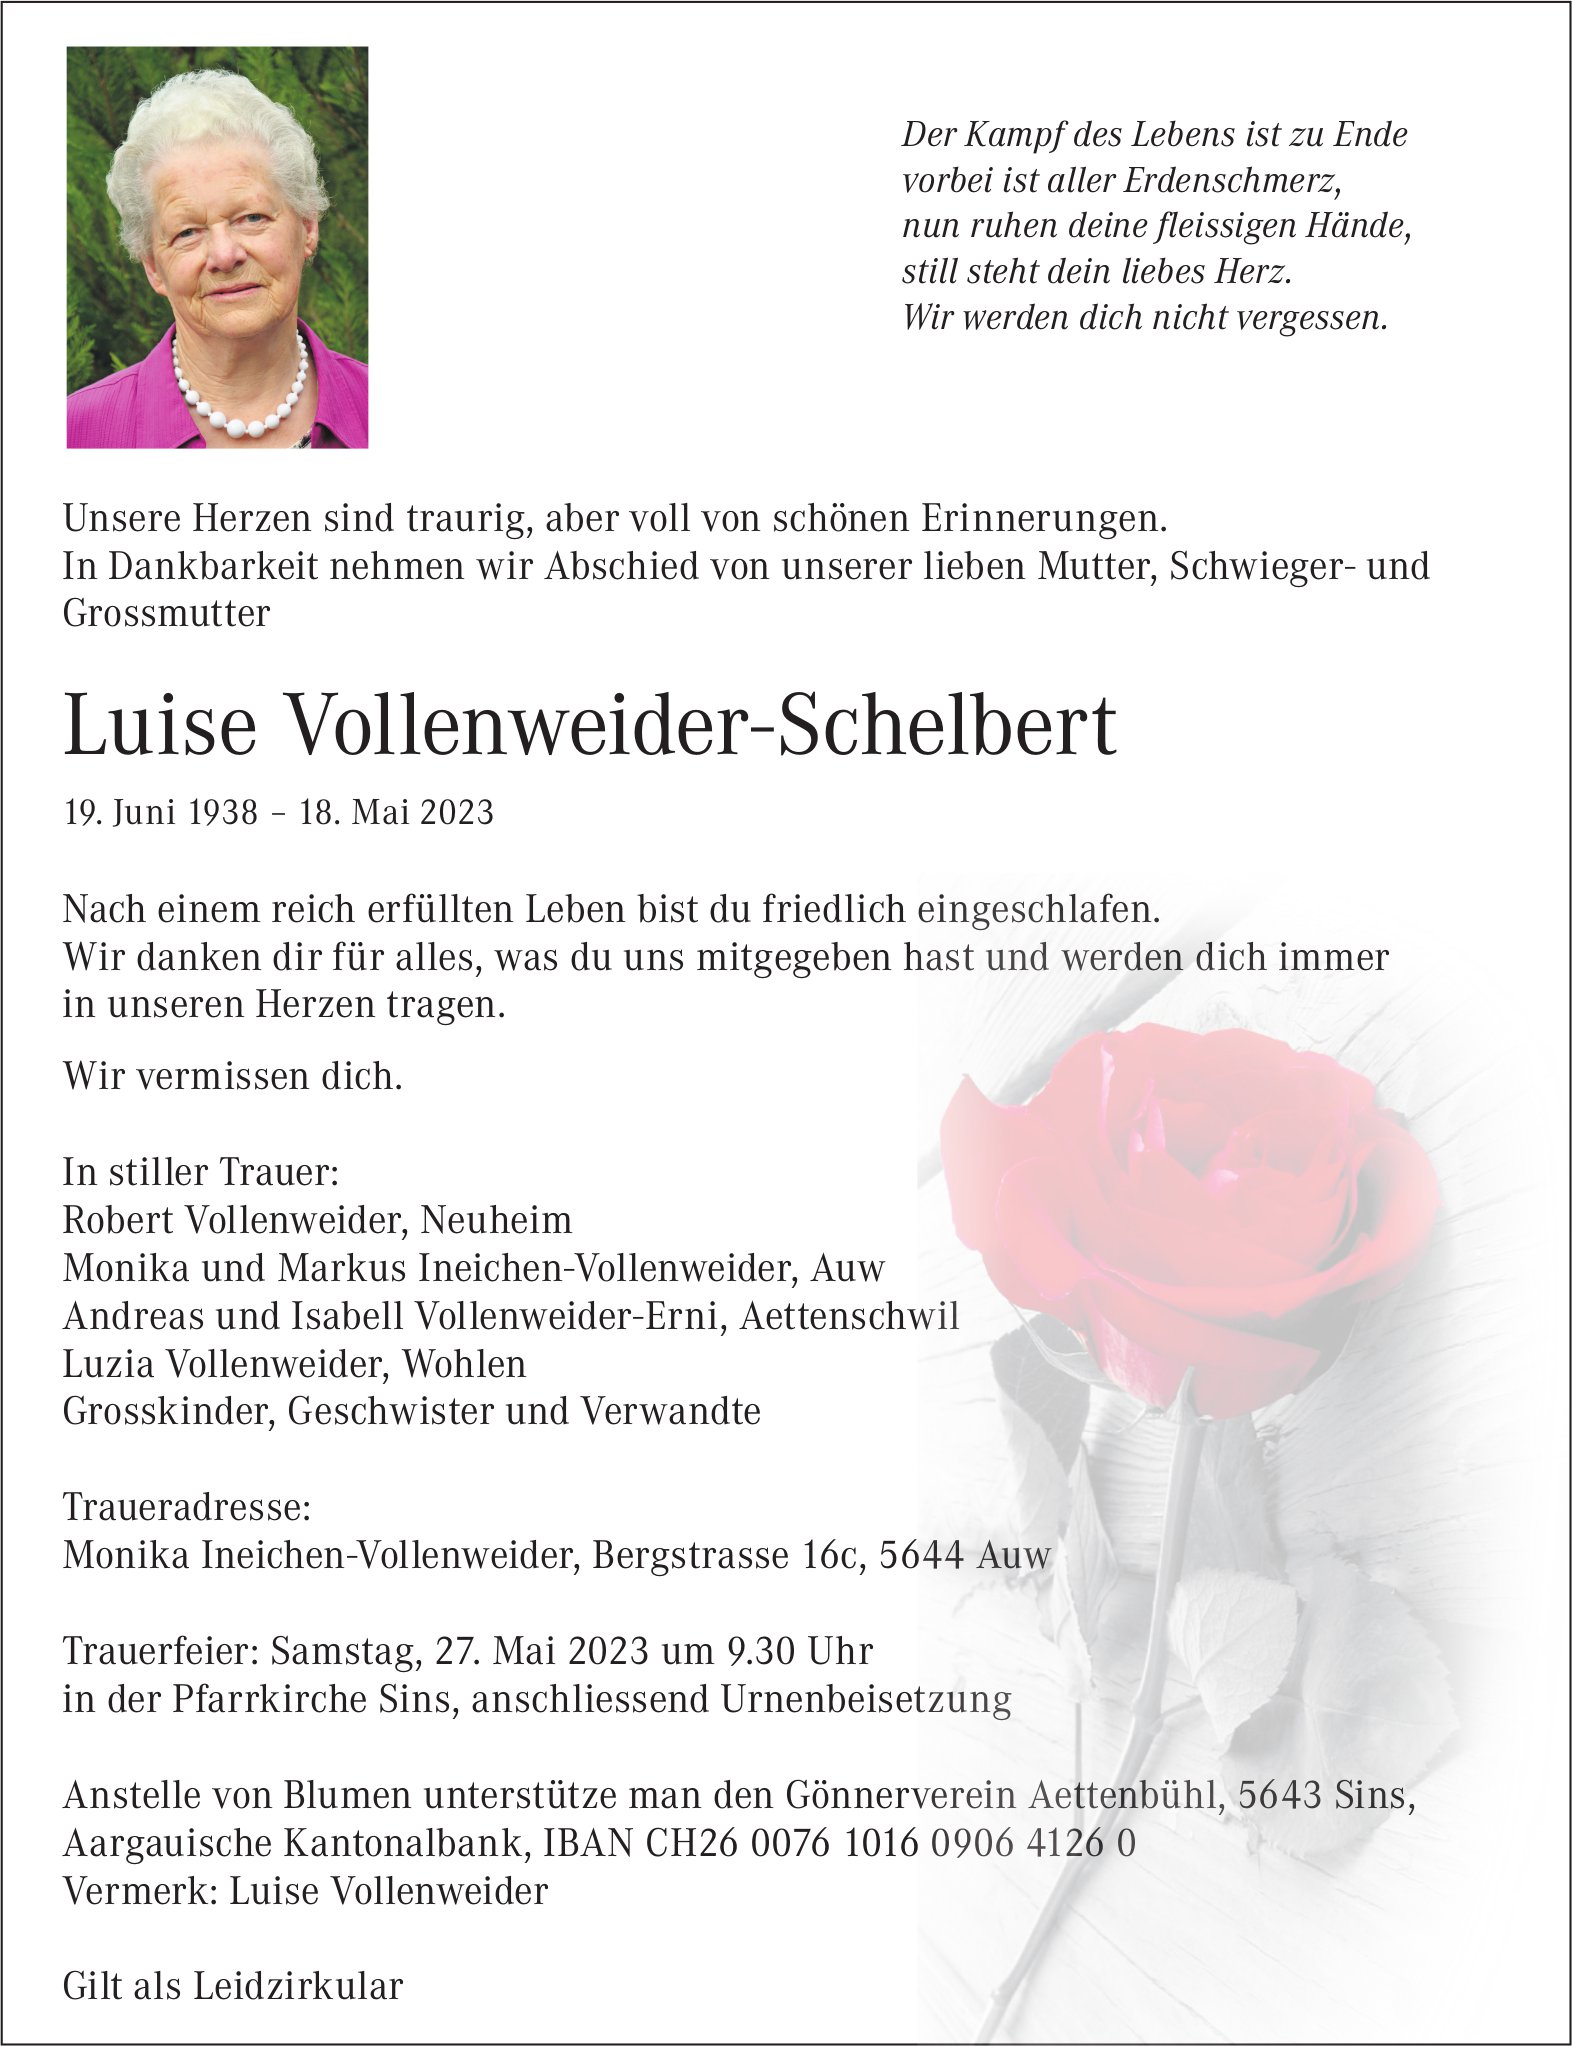 Vollenweider-Schelbert Luise, Mai 2023 / TA